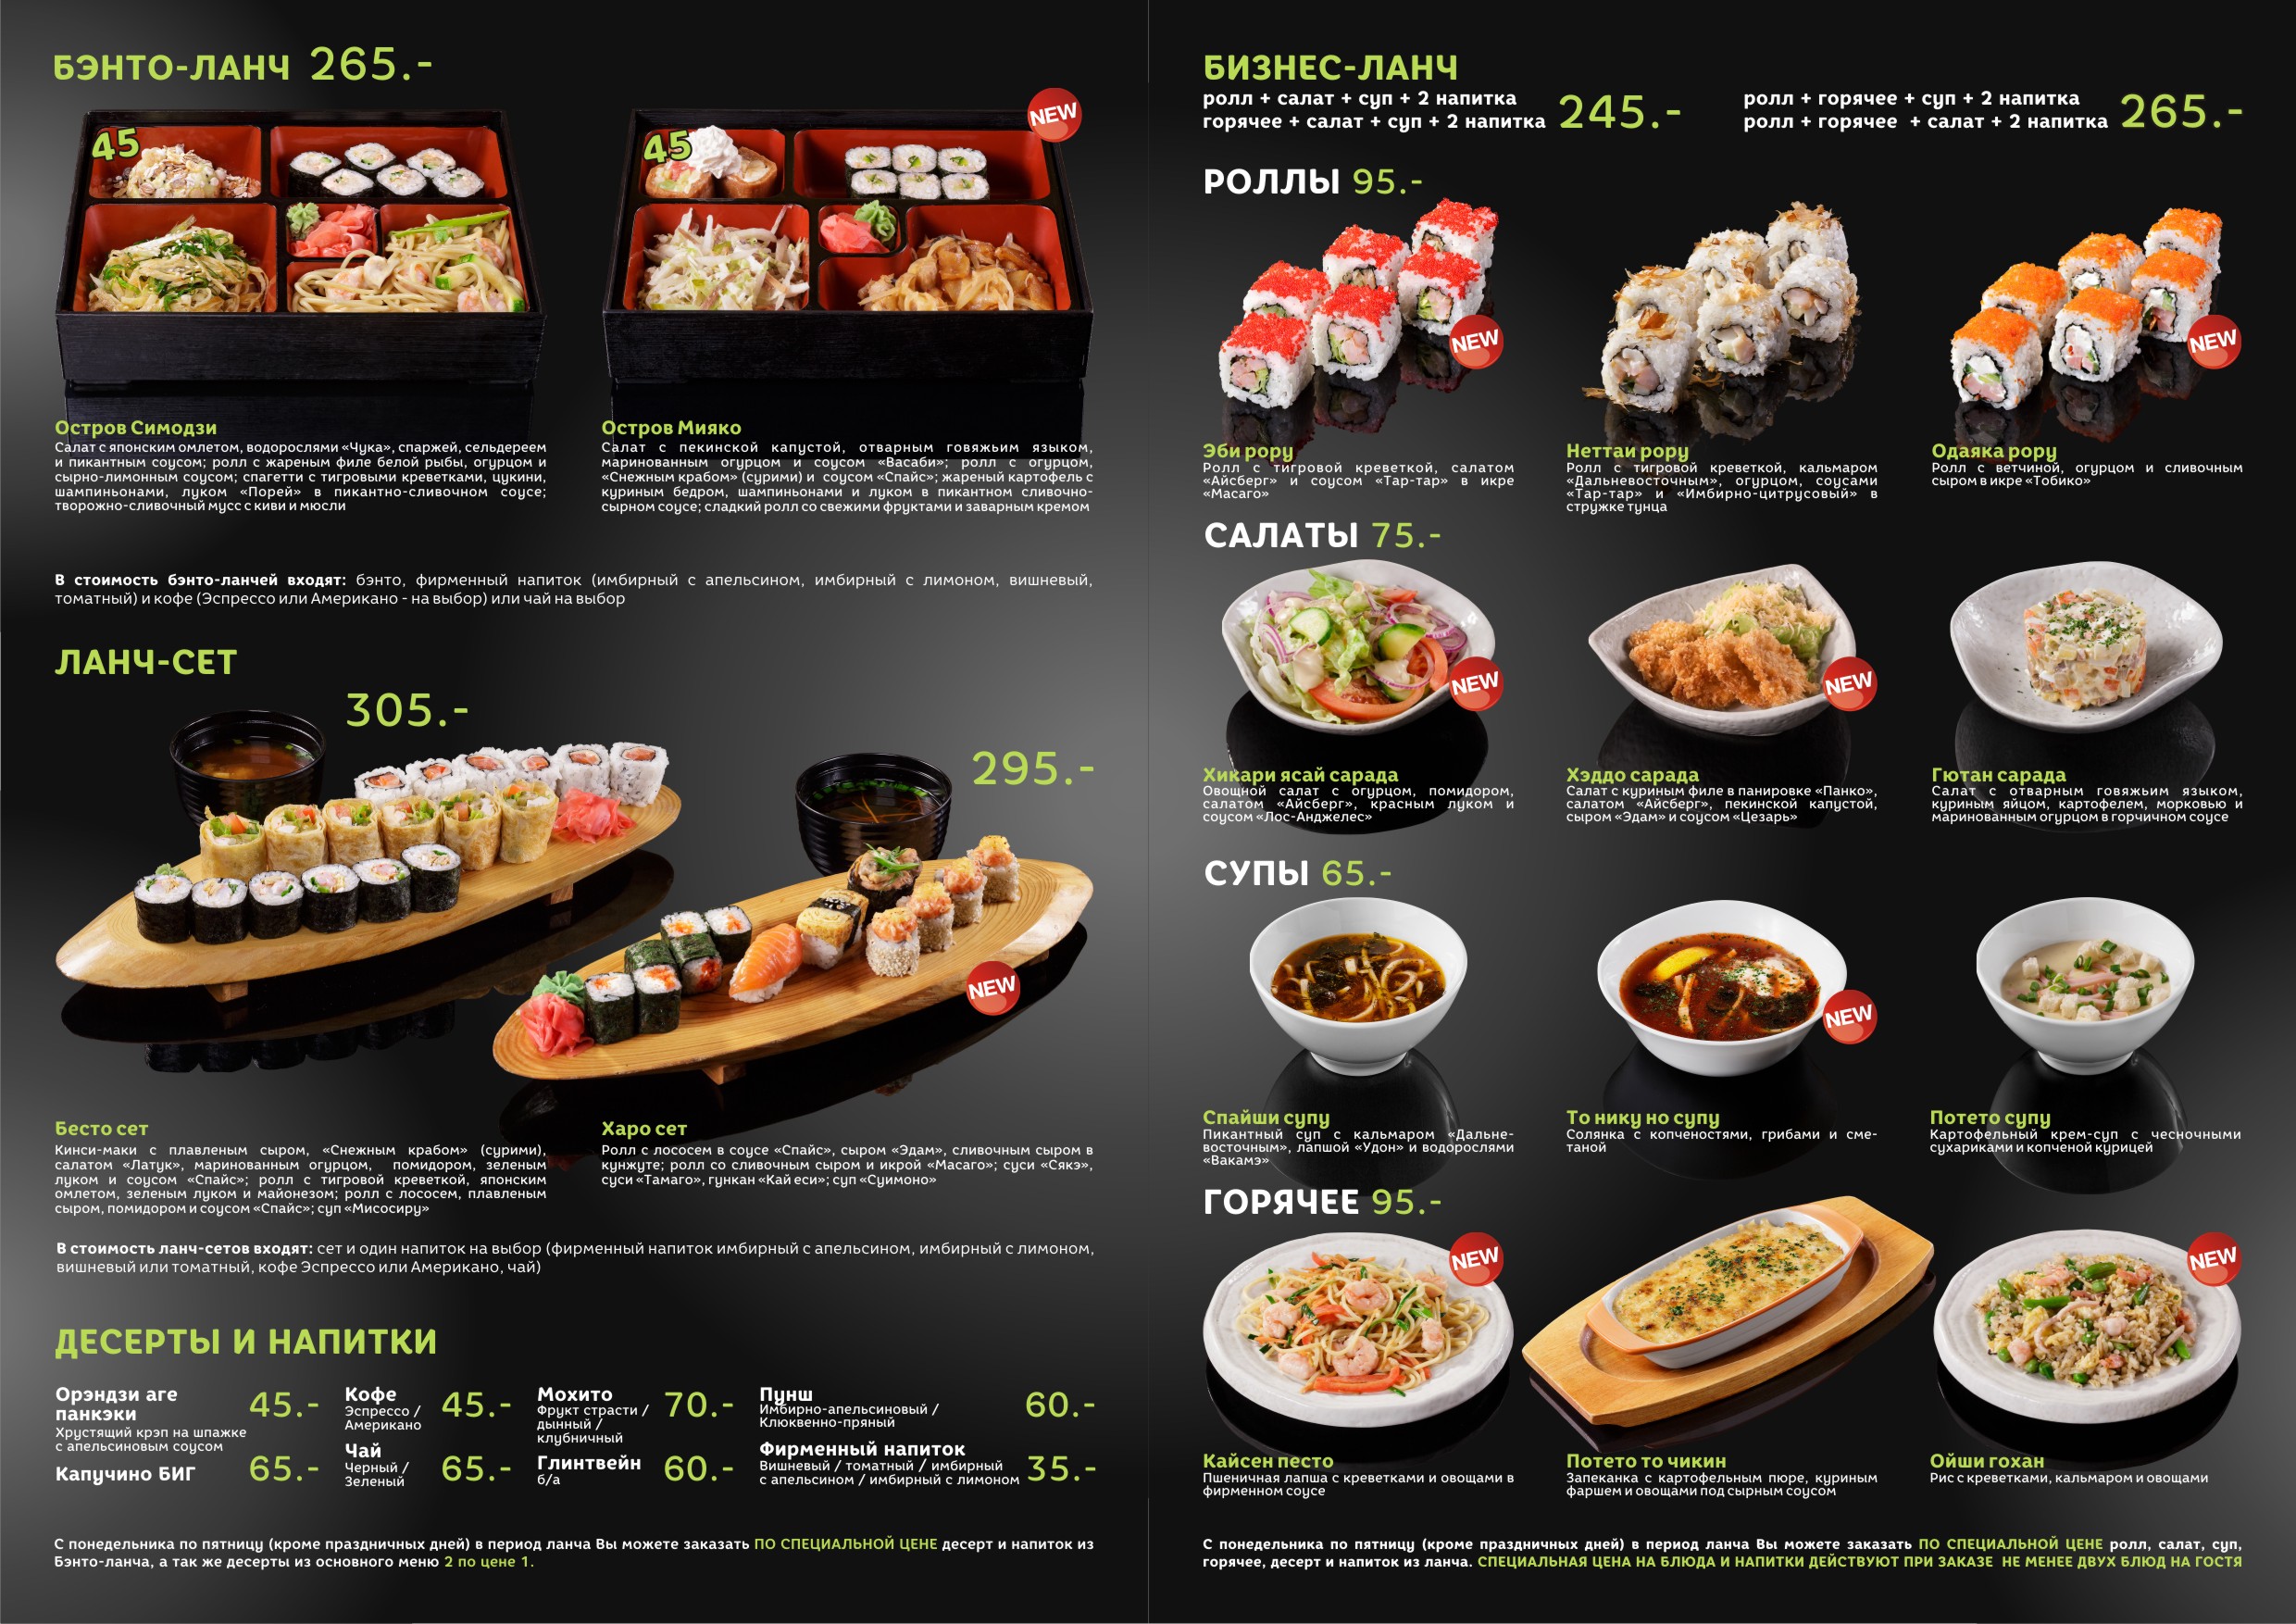 Суши бизнес ланч меню москва (120) фото